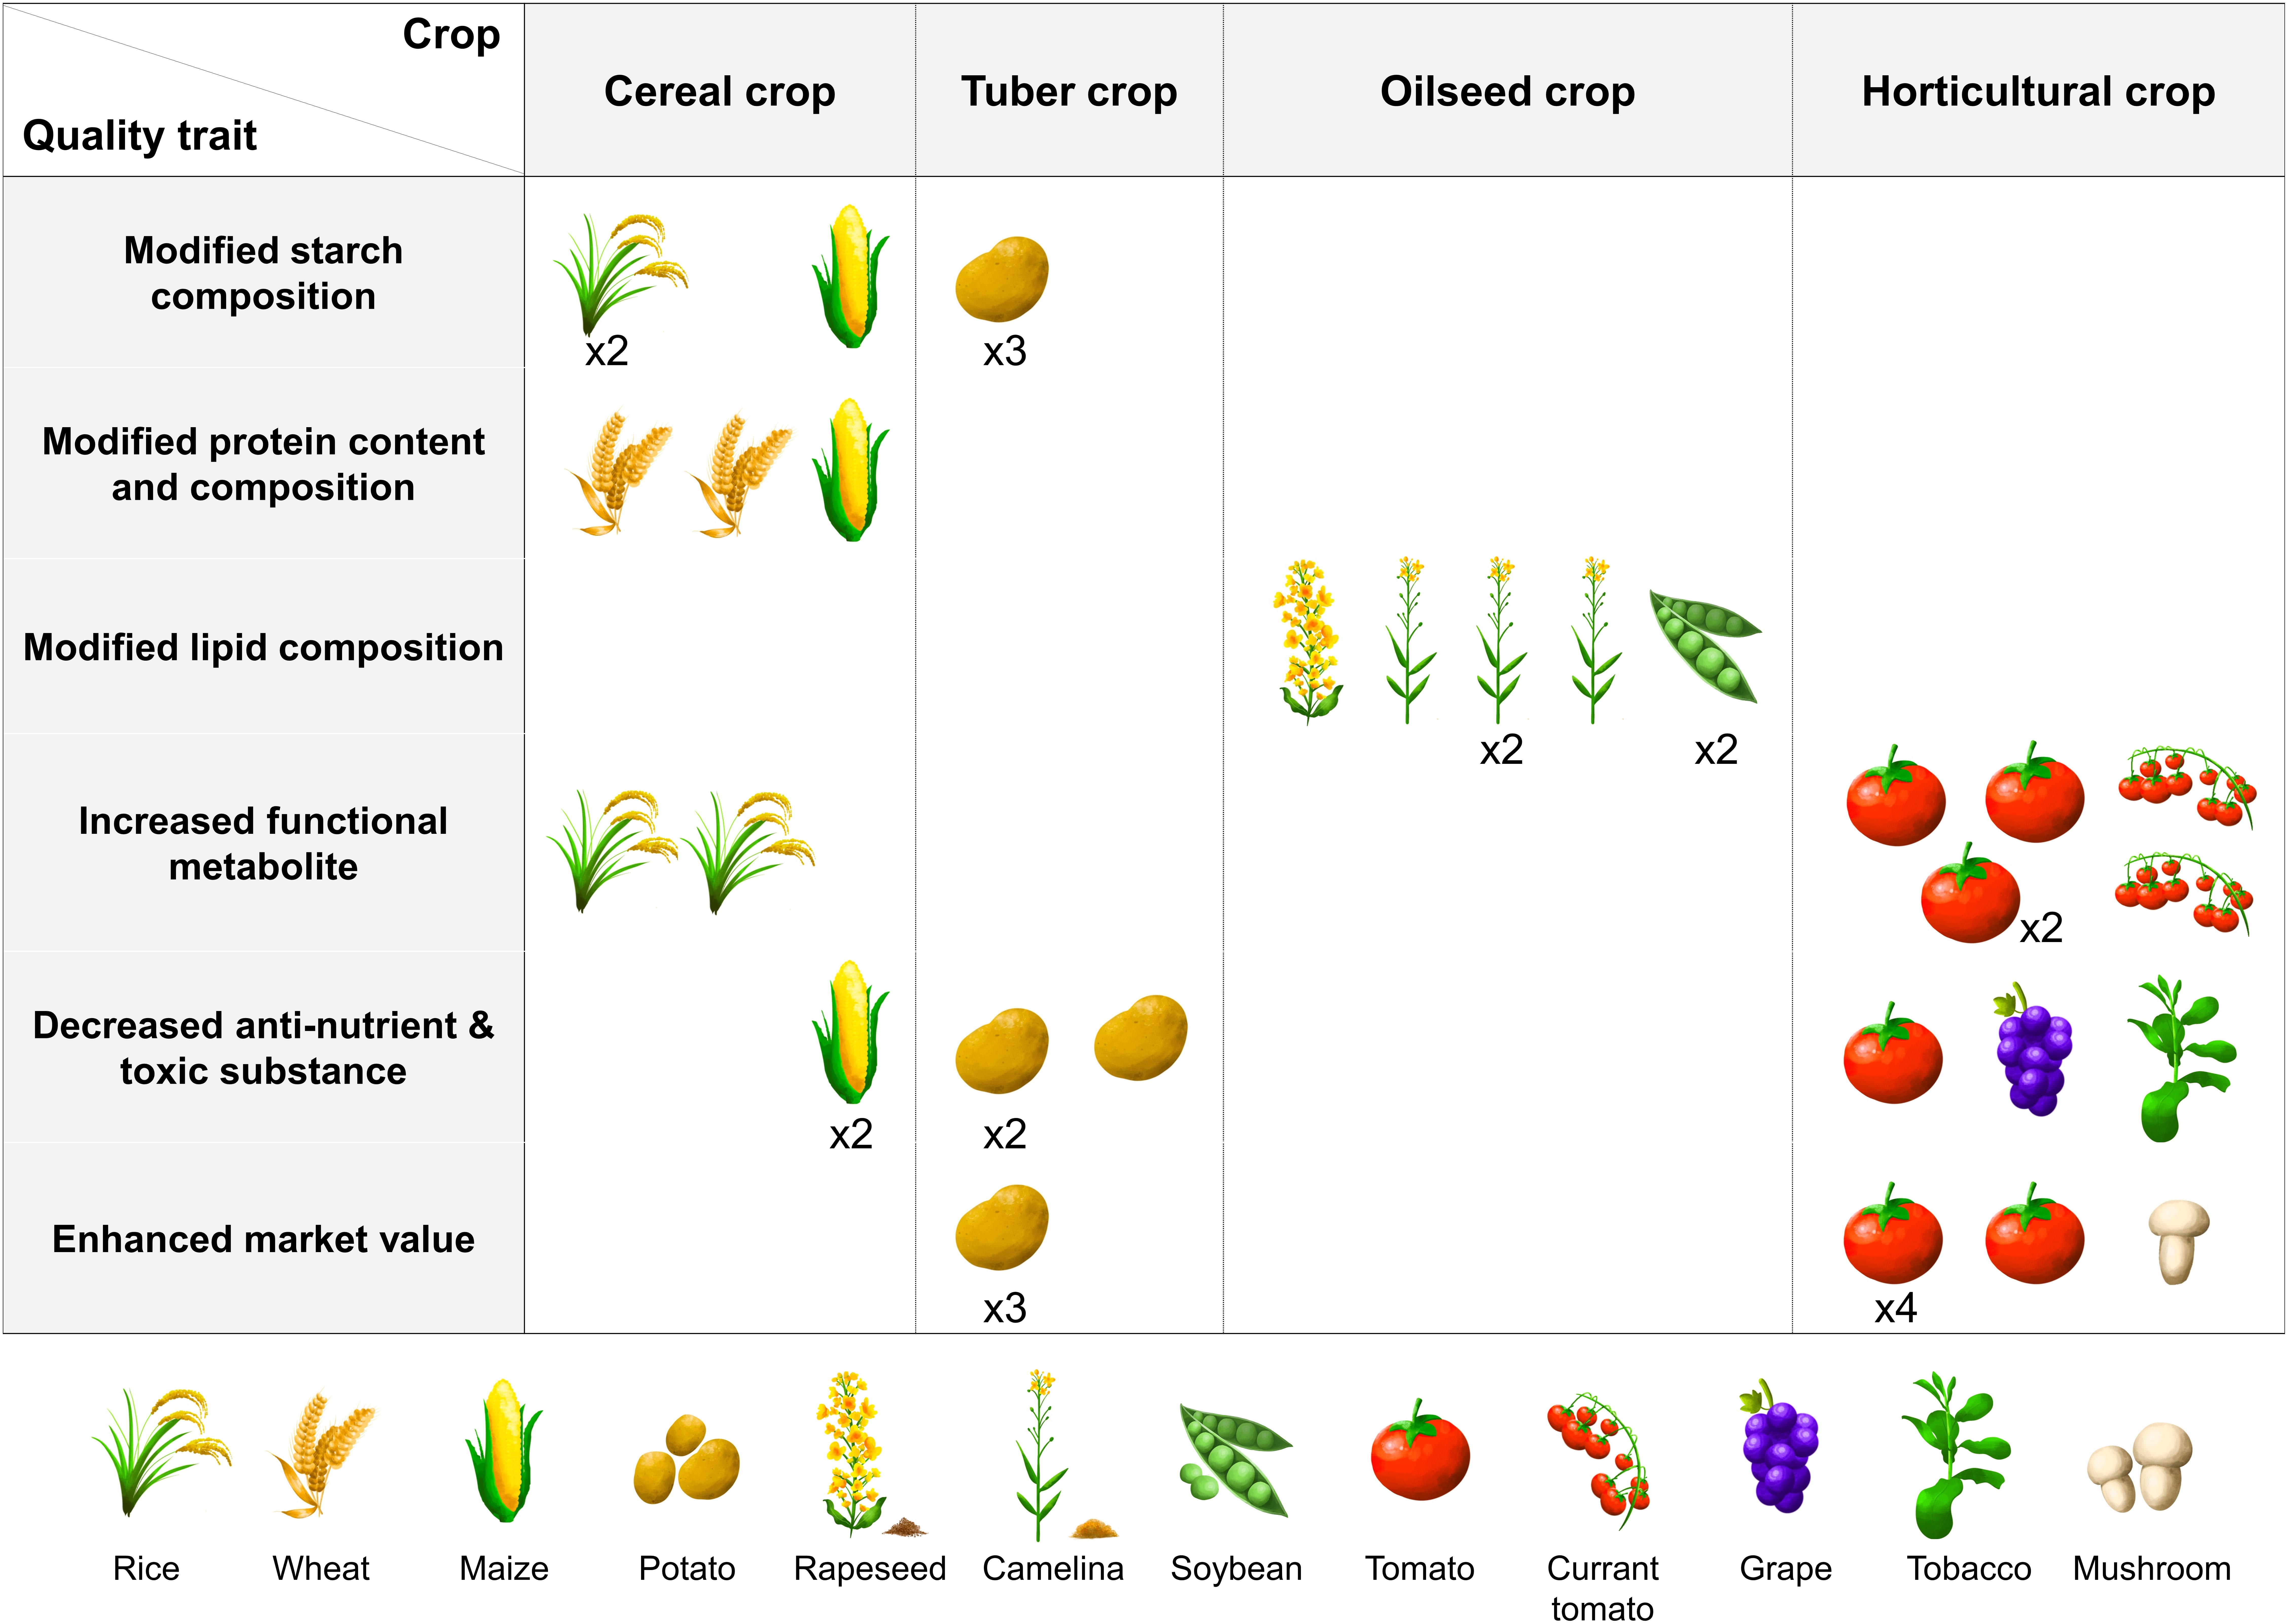 Apple, Description, Cultivation, Domestication, Varieties, Uses,  Nutrition, & Facts